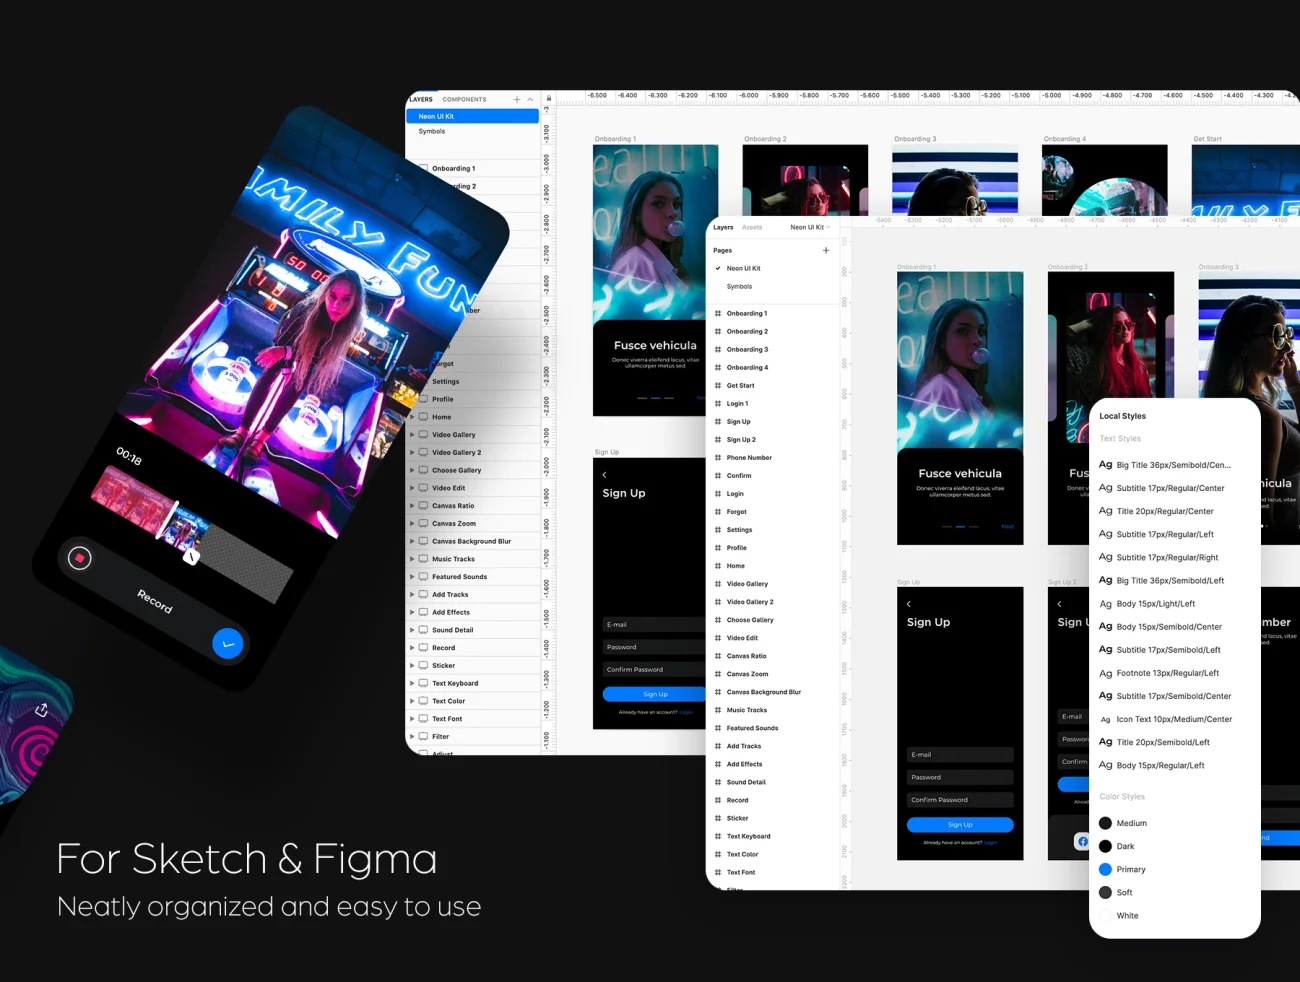 Neon Video Edit App UI Kit 视频编辑应用程序UI套件-UI/UX-到位啦UI